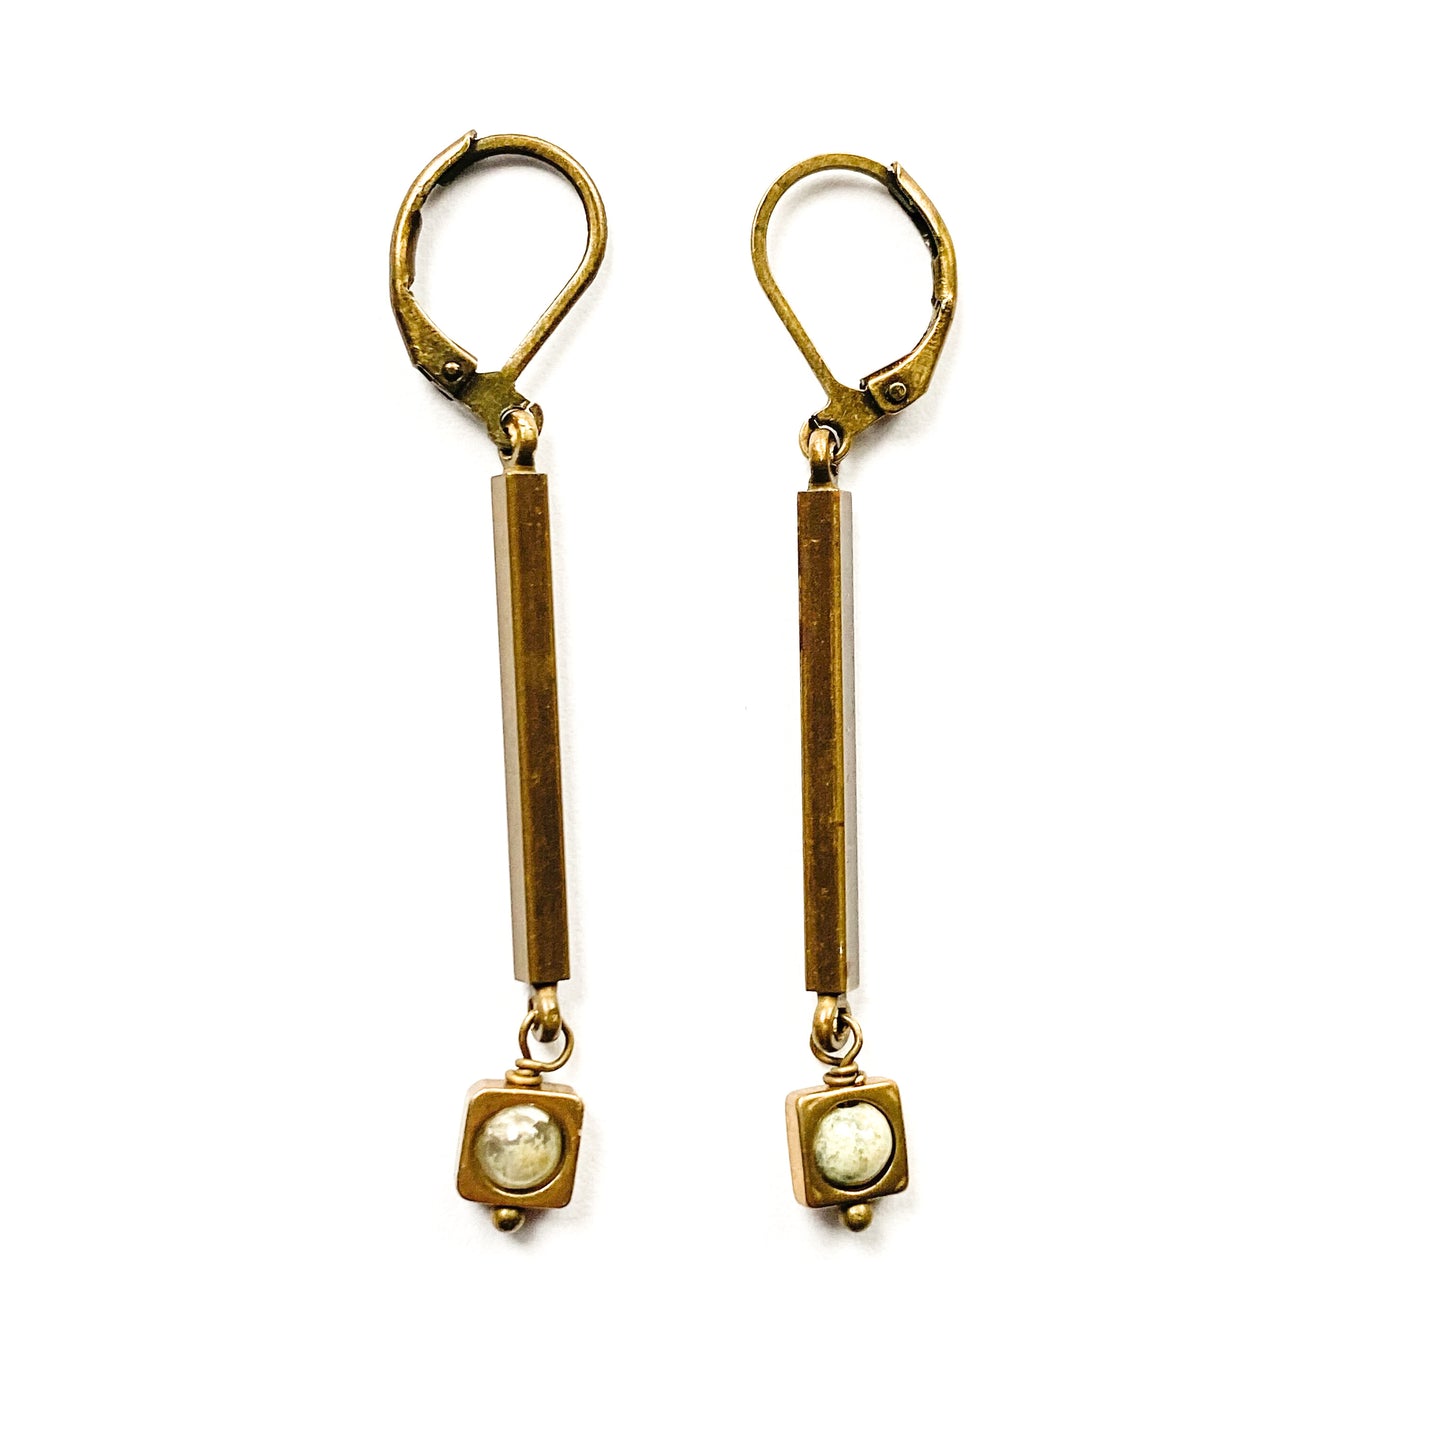 Brass bar earrings, Art Deco style